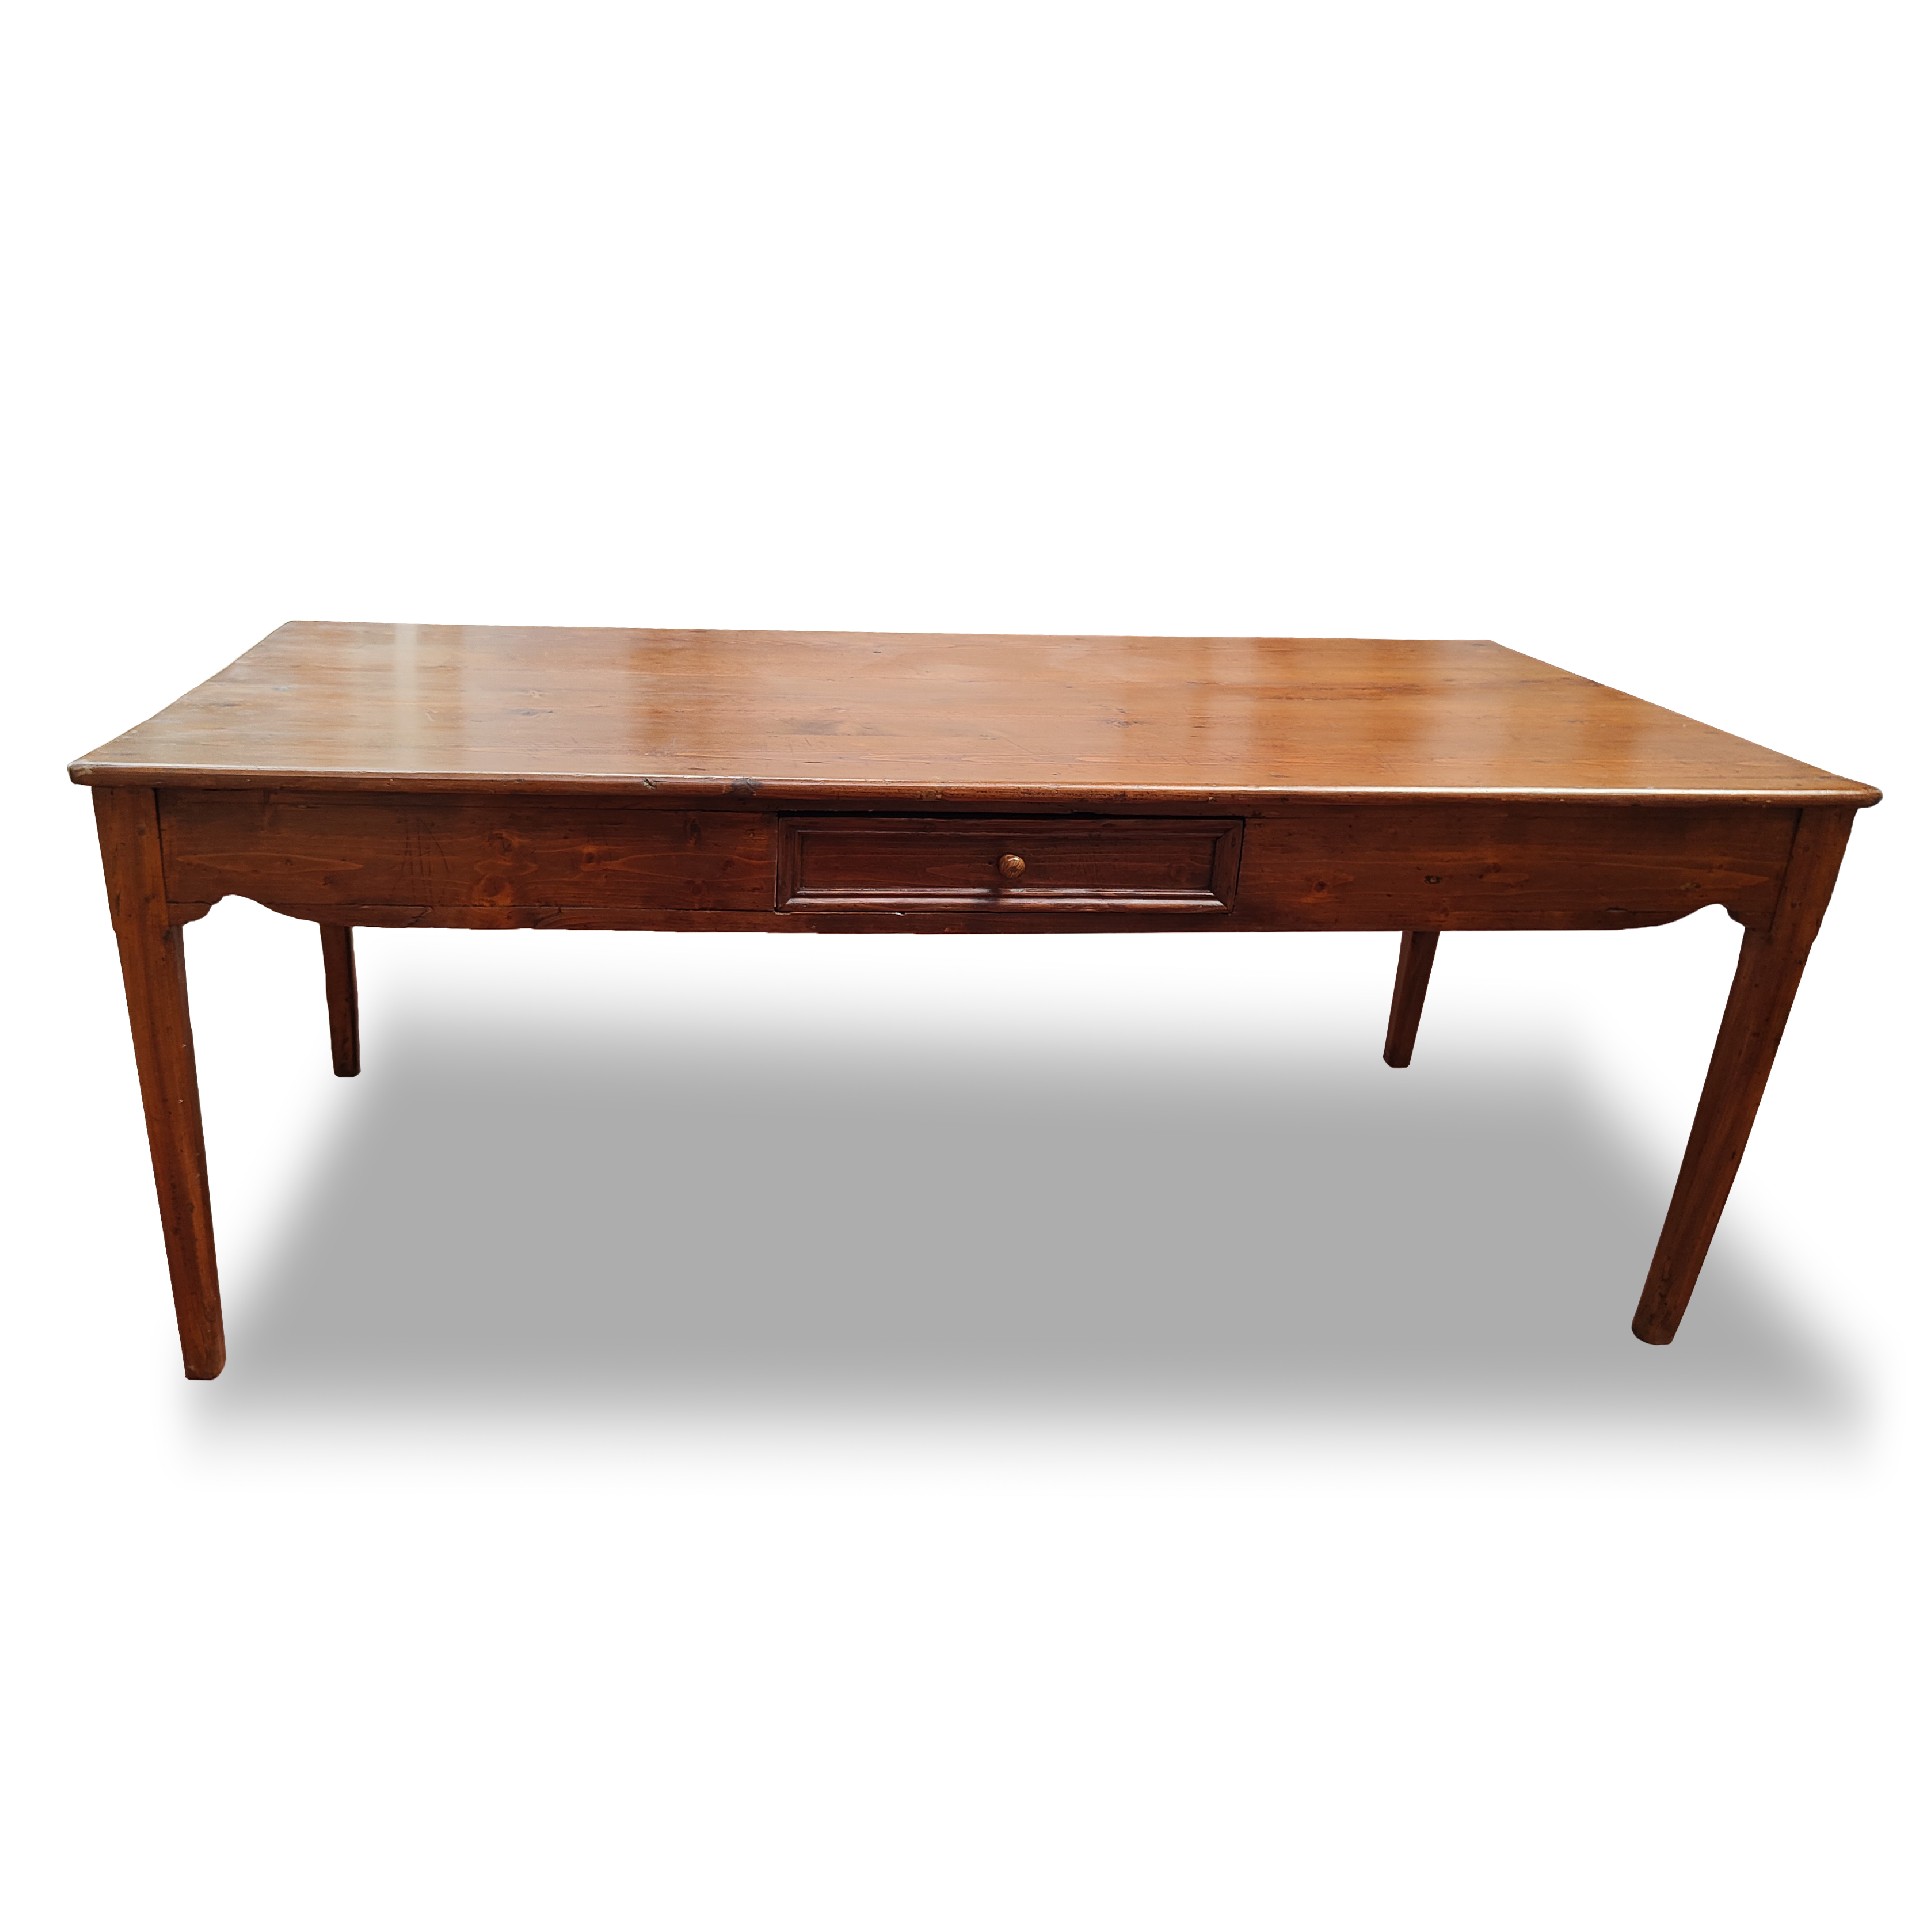 Antico tavolo in legno. - Tavoli in legno - Tavoli e complementi - Prodotti - Antichità Fiorillo